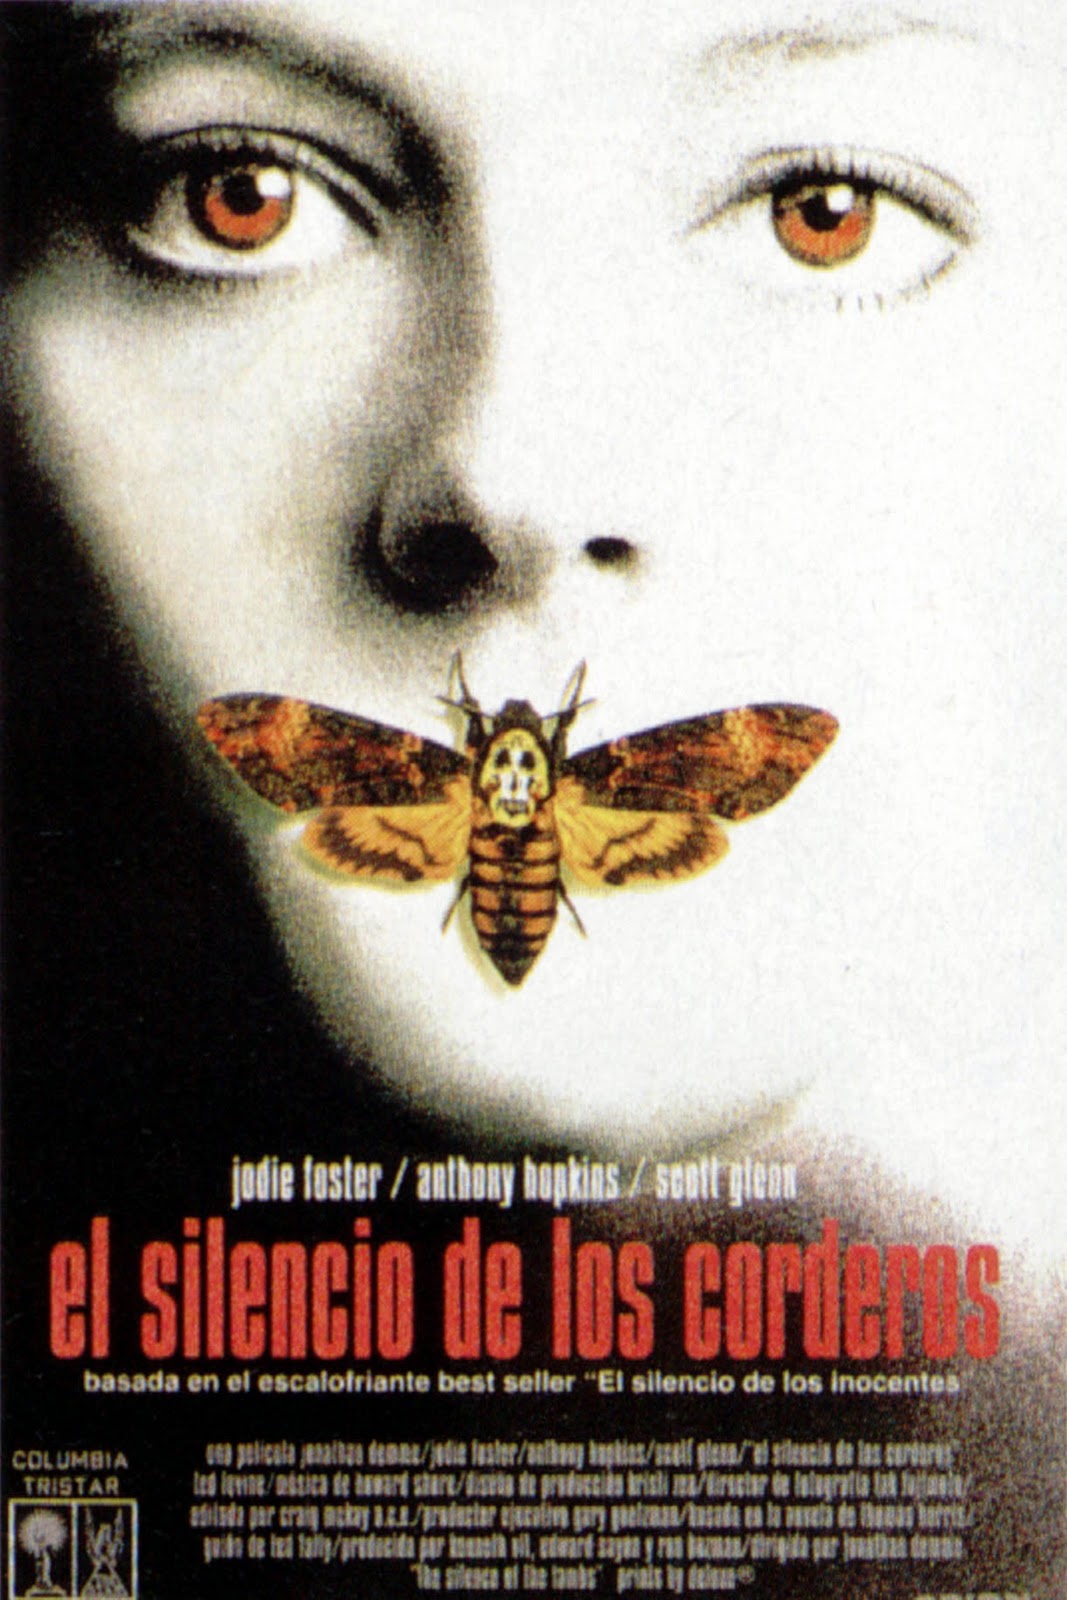 Última película que hayas visto El_silencio_de_los_corderos_